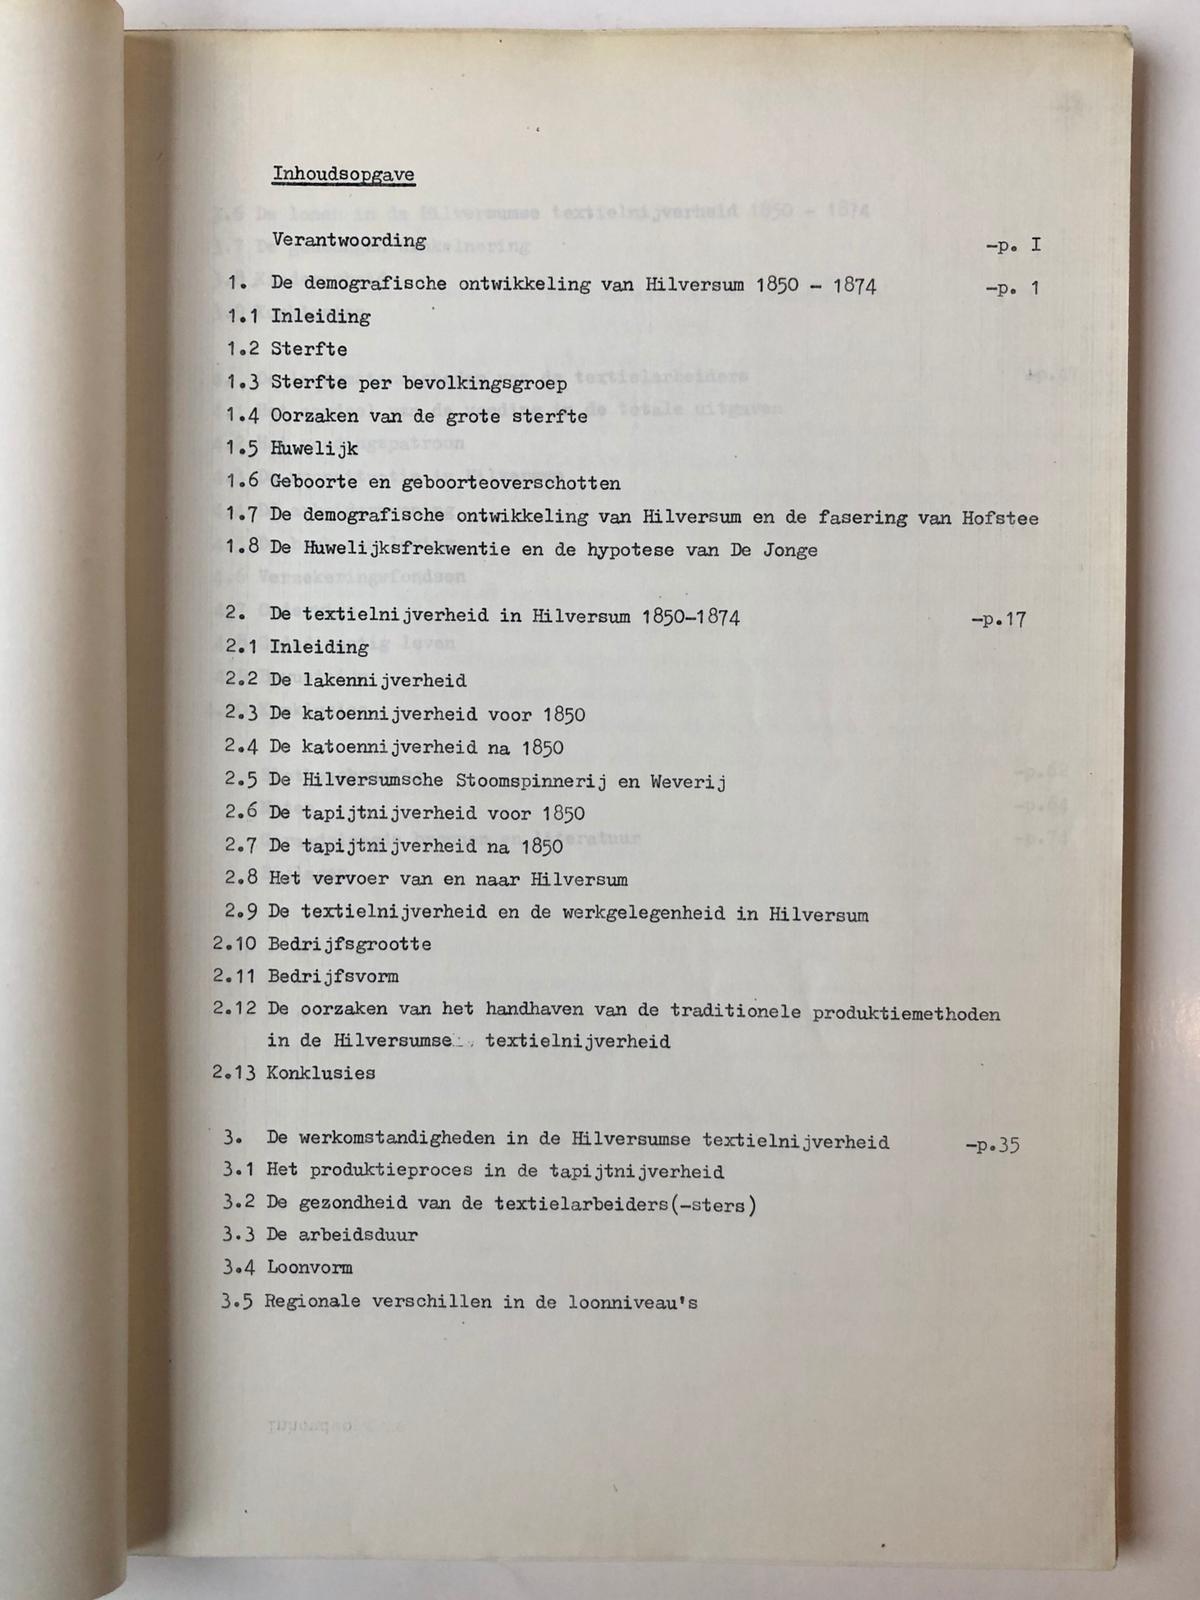  - HILVERSUM, VAN GESTEL -- De Hilversumse textielarbeiders 1850-1874, arbeids- en leefomstandigheden. Doctoraal scriptie door Johan van Gestel, A.dam V.U. 1980, ca. 90 pag., getypt.